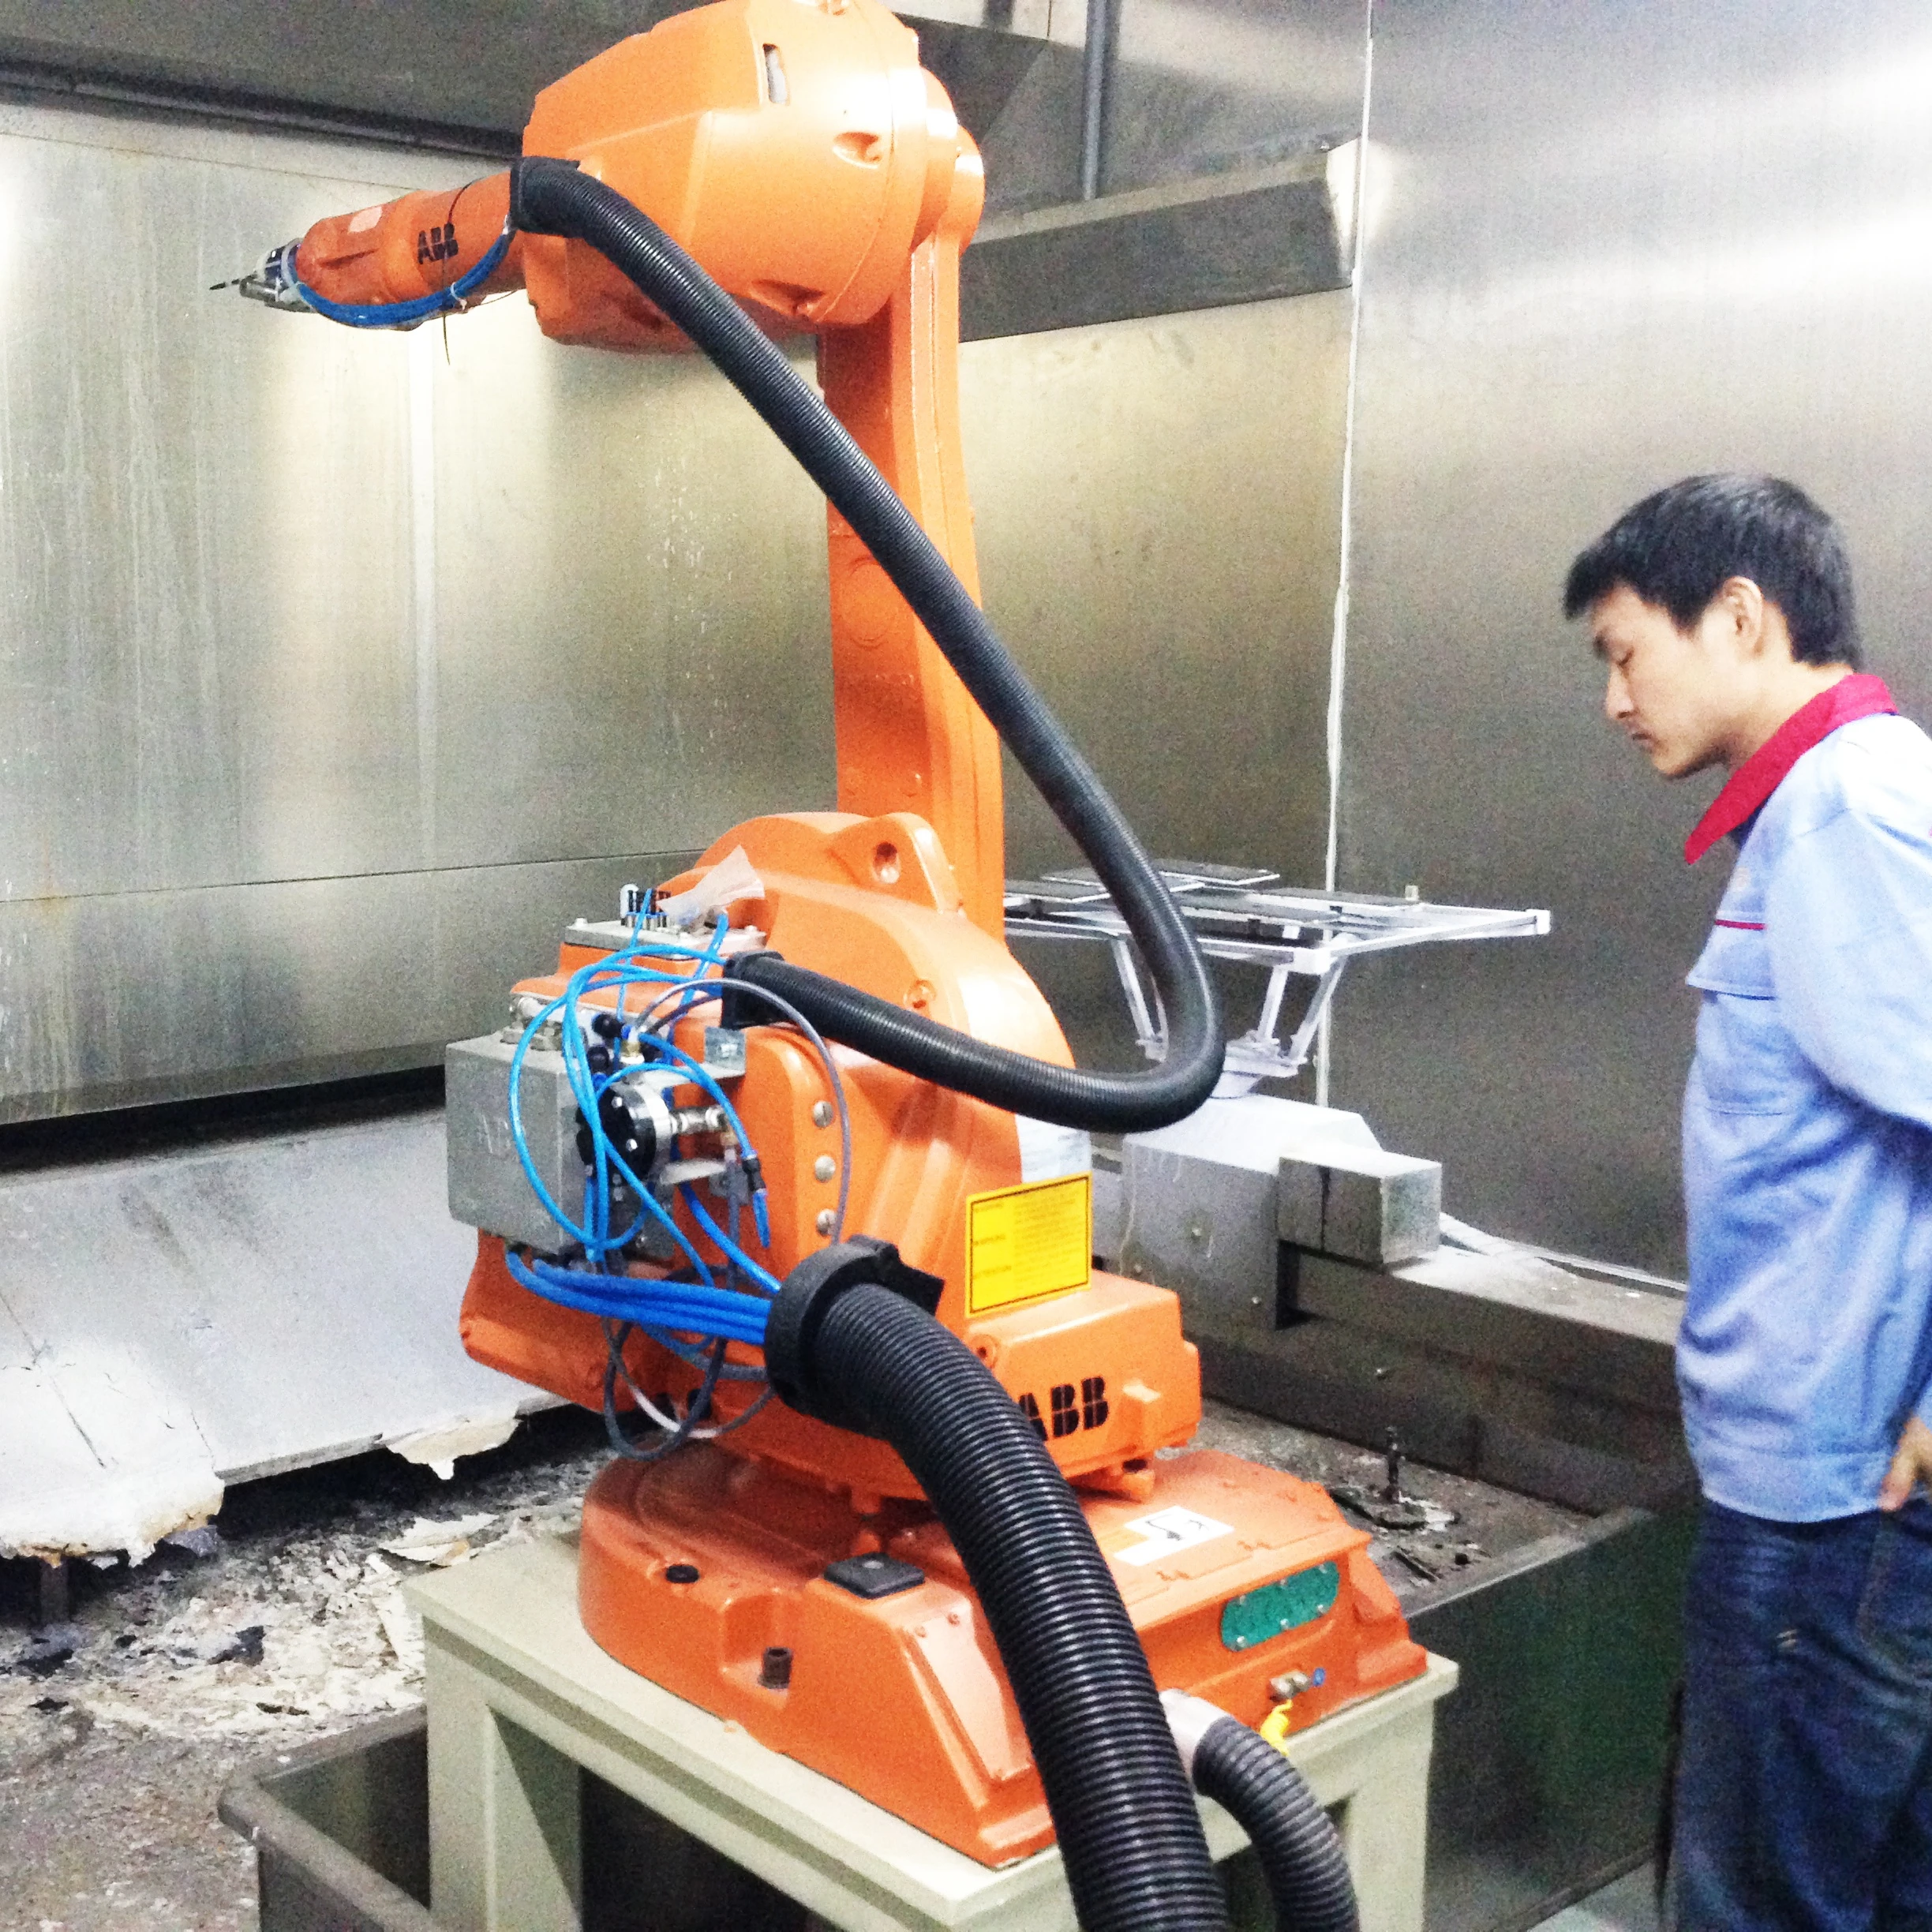 Automatyczna linia do natryskiwania części samochodowych robota Aisa/Mid-East/Affrica Market